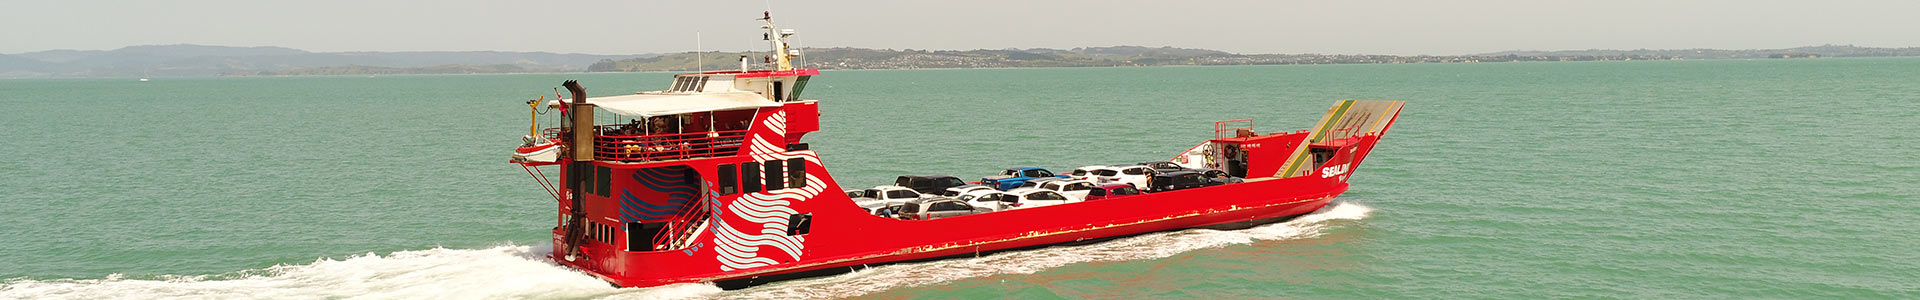 Seamaster ferry photo courtesy Tony Carr